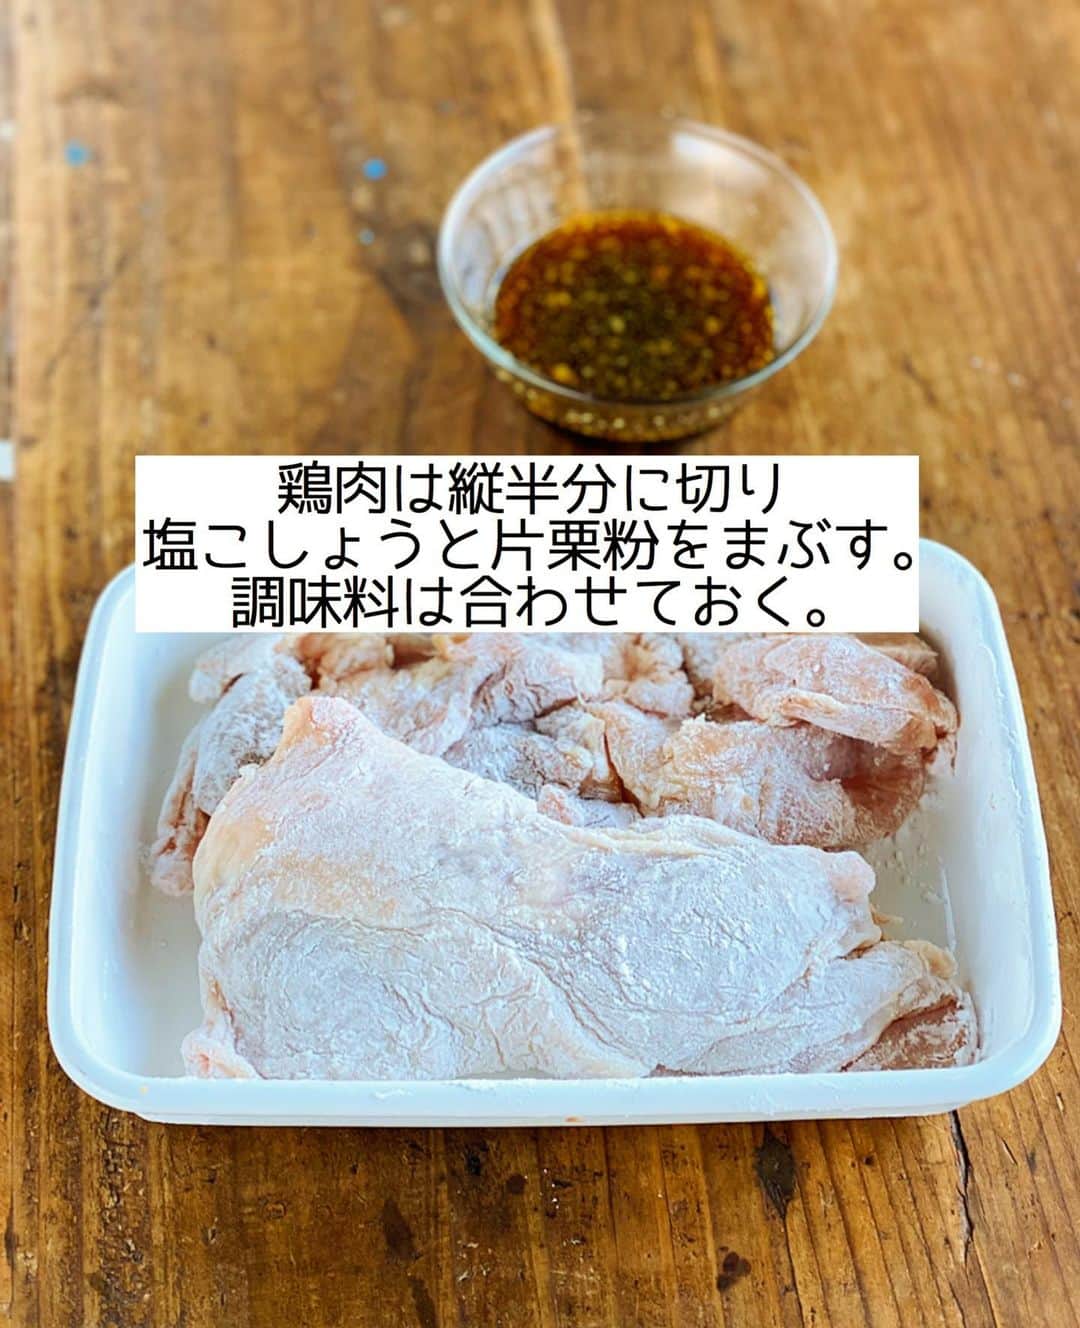 Mizuki【料理ブロガー・簡単レシピ】さんのインスタグラム写真 - (Mizuki【料理ブロガー・簡単レシピ】Instagram)「・﻿ 【#レシピ 】ーーーーーー﻿ ♡鶏肉の甘酢生姜だれ♡﻿ (2品献立提案あり)﻿ ーーーーーーーーーーーー﻿ ﻿ ﻿ ﻿ おはようございます(*^^*)﻿ ﻿ 今日ご紹介させていただくのは﻿ 鶏肉のテリテリおかず♡﻿ こんがり焼いた鶏肉に﻿ 生姜香る甘酢だれをからめました♩﻿ しっかり味で冷めてもおいしく﻿ お弁当にもおすすめですよ〜(*´艸`)﻿ お好みでマヨネーズをかけて﻿ チキン南蛮風にするのもおすすめです♡﻿ ﻿ フライパンひとつでできるので﻿ よかったらお試し下さいね(*^^*)﻿ ﻿ ﻿ ﻿ ＿＿＿＿＿＿＿＿＿＿＿＿＿＿＿＿＿＿＿＿﻿ 【2人分】﻿ 鶏もも肉...大1枚(300g)﻿ 塩こしょう...少々﻿ 片栗粉...適量﻿ サラダ油...大1﻿ ●砂糖・醤油・酢...各大1.5﻿ ●生姜チューブ...3cm﻿ キャベツの千切り...適量﻿ ﻿ 1.鶏肉は身の厚い部分を開いて縦半分に切り、塩こしょうを振って片栗粉をまぶす。●は合わせておく。﻿ 2.フライパンにサラダ油を中火で熱して鶏肉を焼く。焼き色が付いたら裏返してフタをし、弱めの中火で4分蒸し焼きにする。﻿ 3.火が通ったら余分な油を拭き取り、●を加えて煮からめる。器にキャベツの千切りを盛り、鶏肉を食べやすい大きさに切ってのせる。﻿ ￣￣￣￣￣￣￣￣￣￣￣￣￣￣￣￣￣￣￣￣﻿ ﻿ ﻿ ﻿ 《ポイント》﻿ ︎ ♦︎鶏肉は一口大に切ってから焼いてもOK♩﻿ ♦︎甘めの味付けです♩﻿ ﻿ ﻿ ﻿ ﻿ ﻿ ﻿ ＿＿＿＿＿＿＿＿＿＿＿＿＿＿＿＿＿＿＿﻿ 🥣🥣🥣🥣 2品献立提案 🥣🥣🥣🥣﻿ ￣￣￣￣￣￣￣￣￣￣￣￣￣￣￣￣￣￣￣﻿ 【合間に作れるおすすめ副菜】﻿ >じゃがいものカレーマヨ和え(P.99)﻿ >しめじと厚揚げの煮物(P.33)﻿ (#Mizukiの2品献立 より)﻿ ﻿ 【献立の段取り】﻿ 副菜をレンジに入れてからメインを焼く🥢﻿ ￣￣￣￣￣￣￣￣￣￣￣￣￣￣￣￣￣￣￣﻿ ﻿ ﻿ ﻿ ﻿ ﻿ ﻿ ⭐️発売中⭐️3刷重版が決まりました😭﻿ 本当にありがとうございます(涙)﻿ _____________________________________﻿ \15分でいただきます/﻿ 📕#Mizukiの2品献立 📕﻿ (9月24日発売・マガジンハウス)﻿ ￣￣￣￣￣￣￣￣￣￣￣￣￣￣￣￣￣﻿ ﻿ 忙しい私たちには﻿ 2品くらいがちょうどいい！﻿ 『しんどくない献立、考えました』﻿ ￣￣￣￣￣￣￣￣￣￣￣￣￣￣￣￣﻿ ﻿ ーーーーーPART.1 ーーーーー﻿ 【Mizukiのお墨つき！２品献立ベスト10】﻿ 約15分でできる10献立をご紹介！﻿ メインは全部フライパン、副菜はレンチンor混ぜるだけ♡﻿ ﻿ ーーーーーPART.2 ーーーーー﻿ 【フライパンひとつ！今夜のメインおかず】﻿ 献立の主役になる肉や魚のおかず50品！﻿ Part3の副菜と組み合わせれば﻿ 献立のバリエーションが広がりますよ♩﻿ ﻿ ーーーーー PART.3 ーーーーー﻿ 【合間に作れる！ 野菜別かんたん副菜】﻿ レンチンor和えるだけの副菜レシピを﻿ 素材別にたっぷり収録♩﻿ ﻿ ーーーーー番外編ーーーーー﻿ 【ひとつで満足！ご飯＆麺】﻿ 【具だくさん！おかずスープ】﻿ 【オーブンいらずのおやつレシピ】﻿ ￣￣￣￣￣￣￣￣￣￣￣￣￣￣￣￣￣￣﻿ (ハイライトにリンク🔗あります💗)﻿ ﻿ ﻿ ﻿ ﻿ ﻿ ＿＿＿＿＿＿＿＿＿＿＿＿＿＿＿＿＿＿﻿ レシピを作って下さった際や﻿ レシピ本についてのご投稿には﻿ タグ付け( @mizuki_31cafe )して﻿ お知らせいただけると嬉しいです😊💕﻿ ￣￣￣￣￣￣￣￣￣￣￣￣￣￣￣￣￣￣﻿ ﻿ ﻿ ﻿ ﻿ ﻿ #鶏肉#甘酢#生姜#お弁当#Mizuki#簡単レシピ#時短レシピ#節約レシピ#料理#フーディーテーブル#マカロニメイト#おうちごはん#デリスタグラマー#料理好きな人と繋がりたい#食べ物#料理記録#おうちごはんlover#写真好きな人と繋がりたい#foodpic#cooking#recipe#lin_stagrammer#foodporn#yummy#f52grams#鶏肉の甘酢生姜だれm」10月25日 7時37分 - mizuki_31cafe